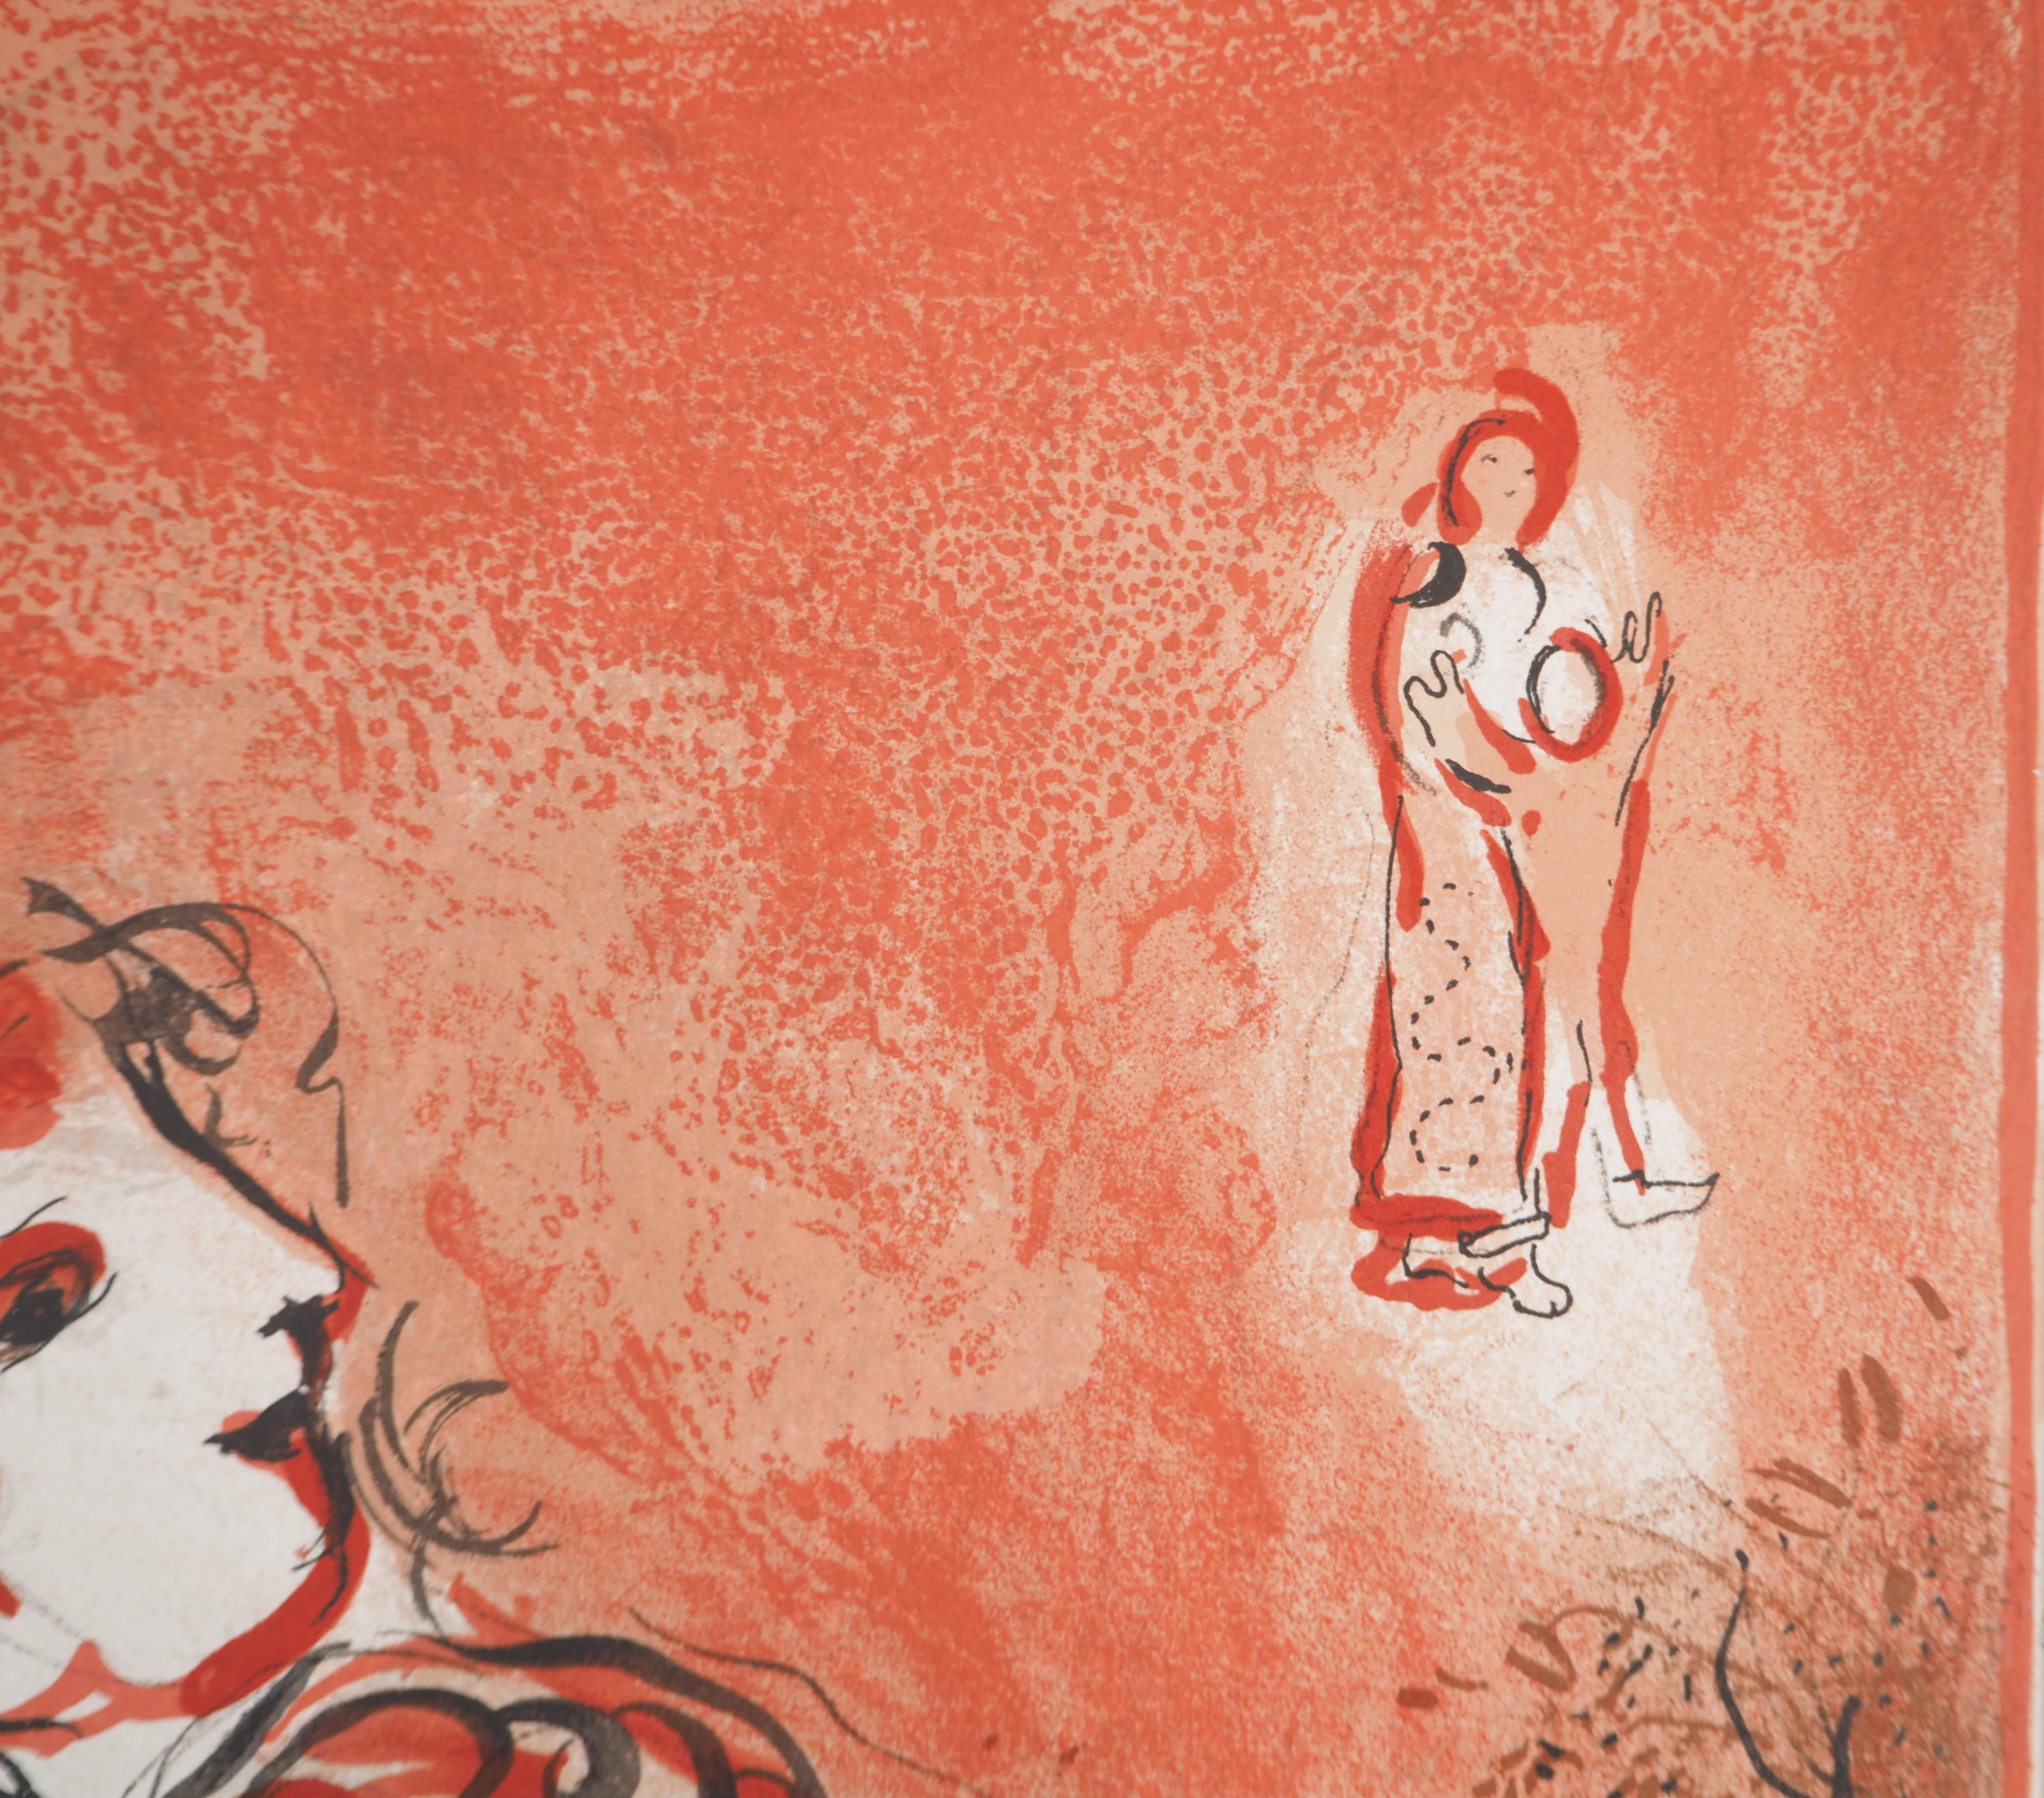 Marc Chagall (1887-1985) 
Die Bibel, der Engel des Heils

Original-Lithographie (Werkstatt Daeger) 
Auf Papier 36 x 26,5 cm (ca. 14,5 x 10,2 Zoll)

REFERENZ: 
Werkverzeichnis Chagall Lithographe, Mourlot #231

INFORMATION : Für die Zeitschrift Verve